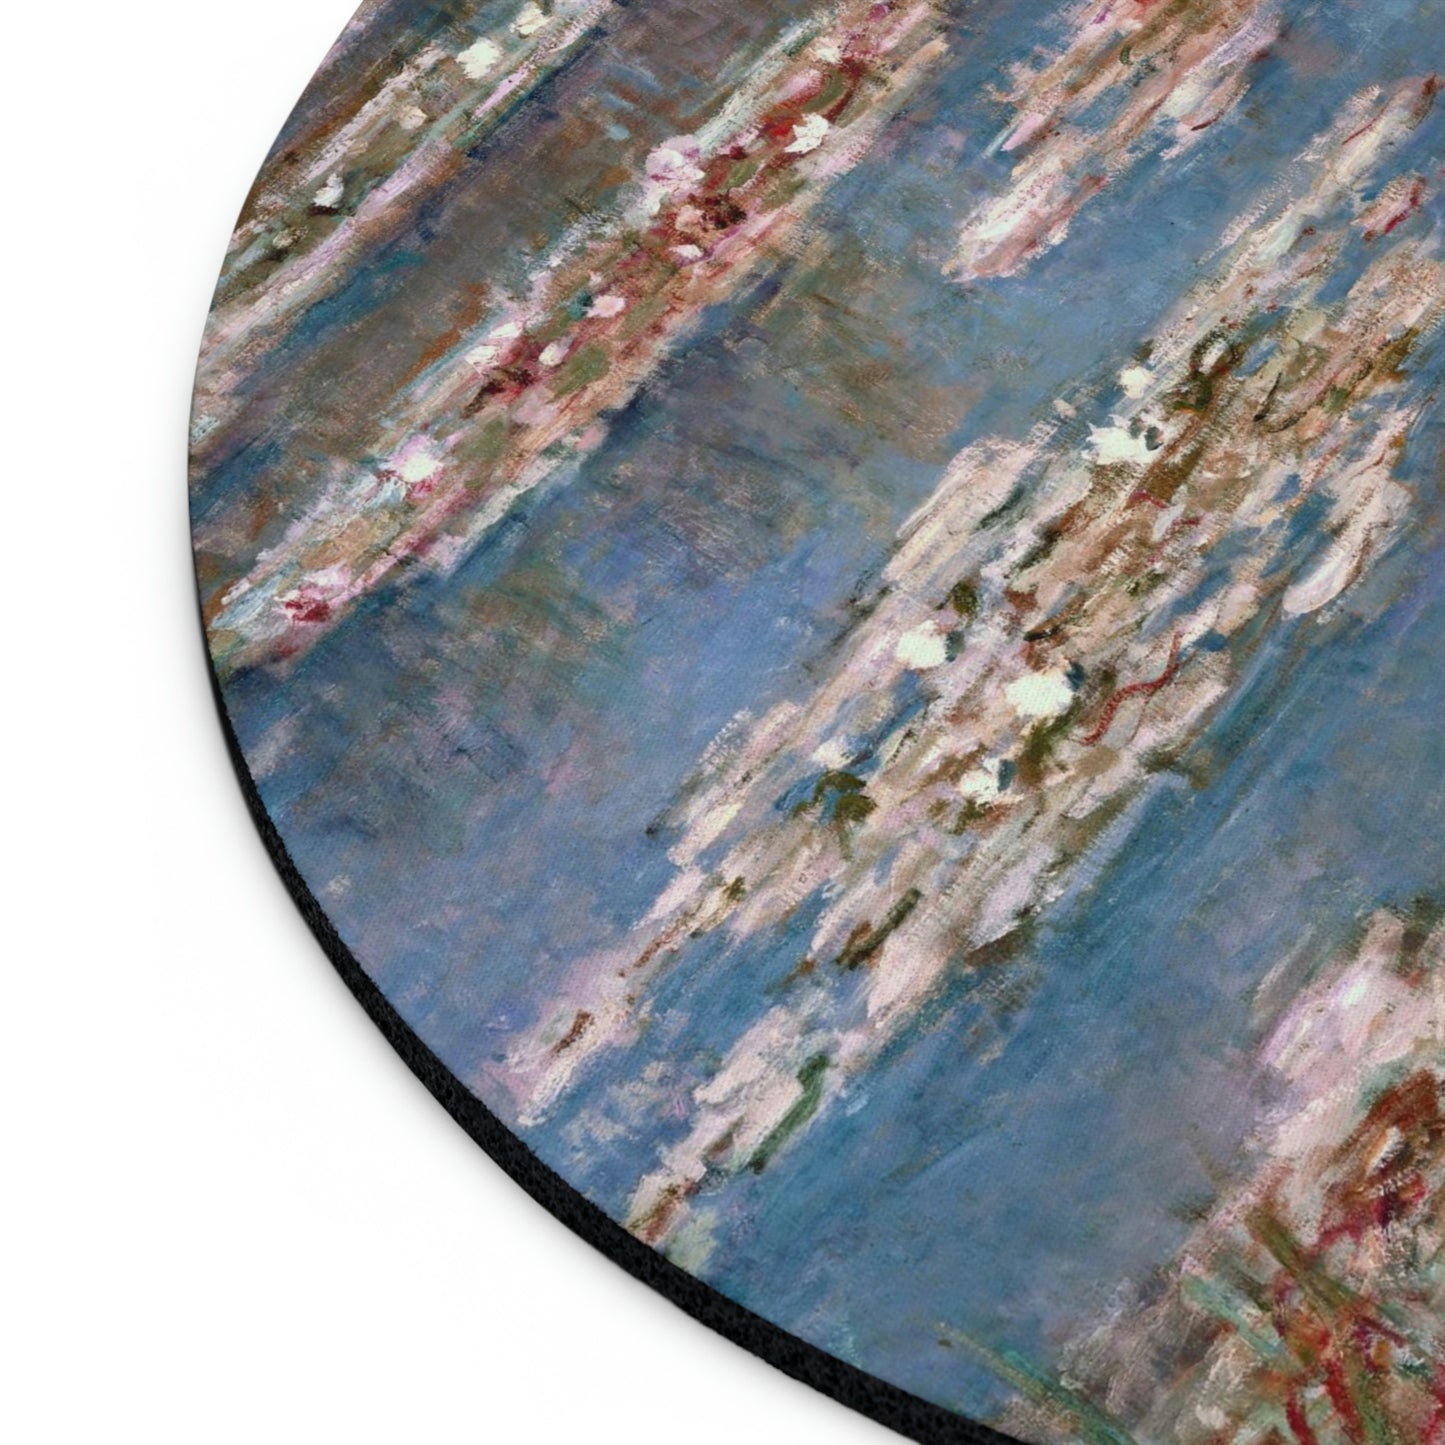 Claude Monet: "Nympheas" – Mouse Pad